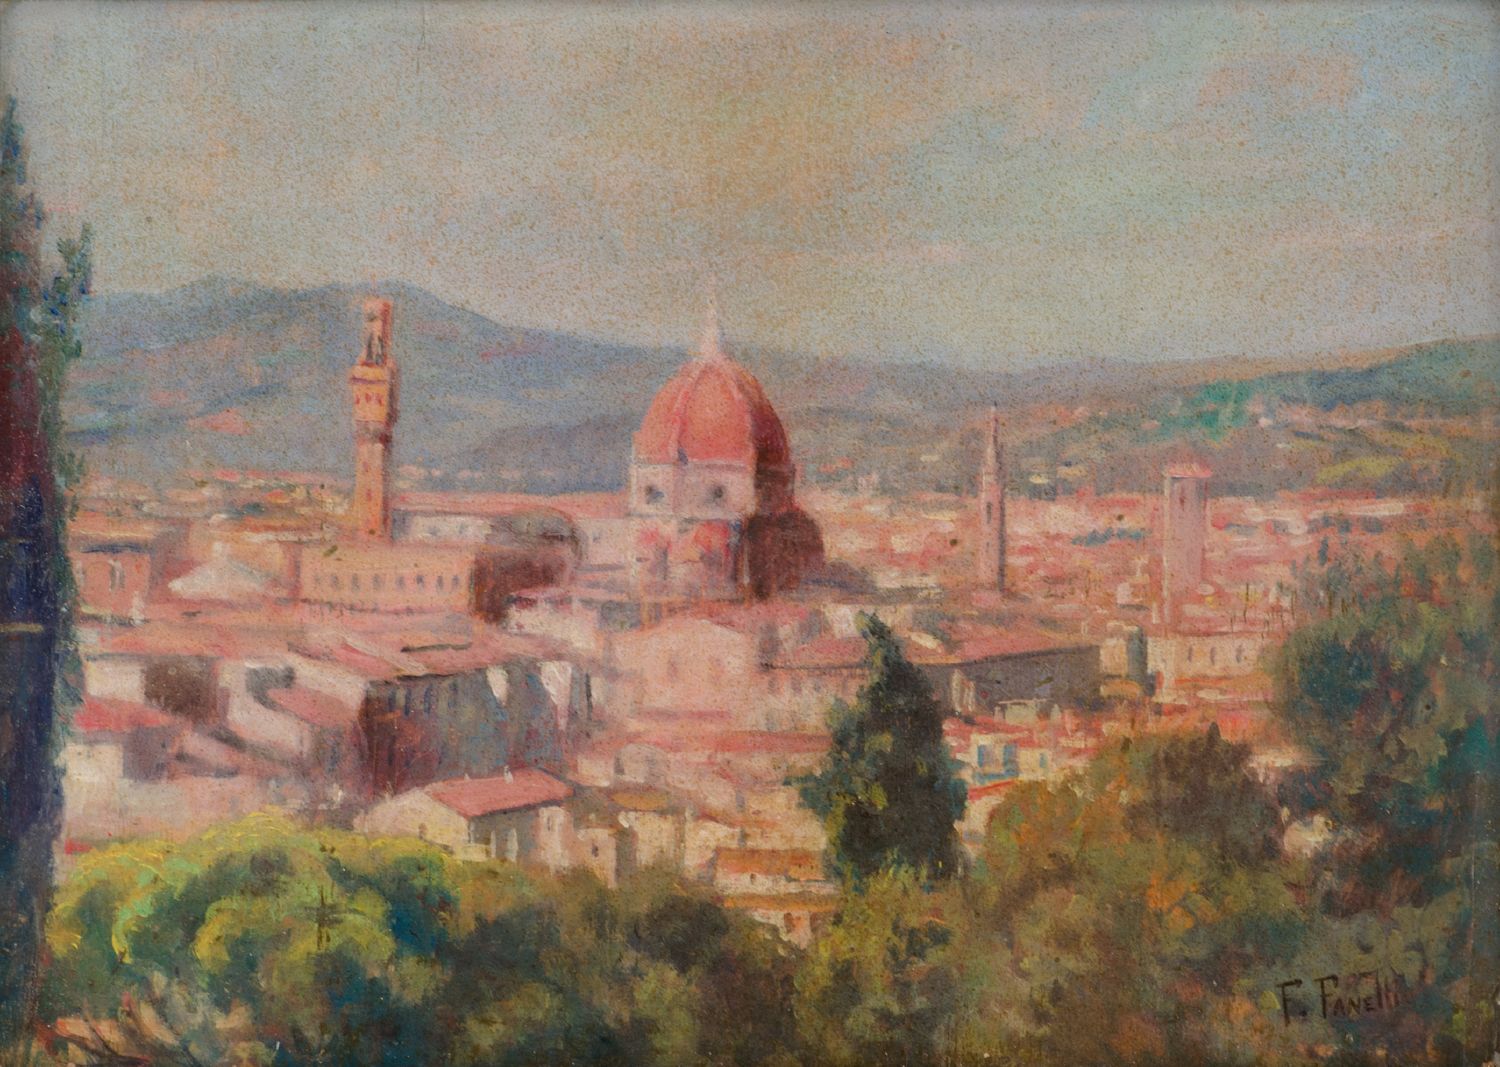 FRANCESCO FANELLI (Livorno 1869 - Bagno a Ripoli (FI) 1924) OLIO su tavola "veduta di Firenze"